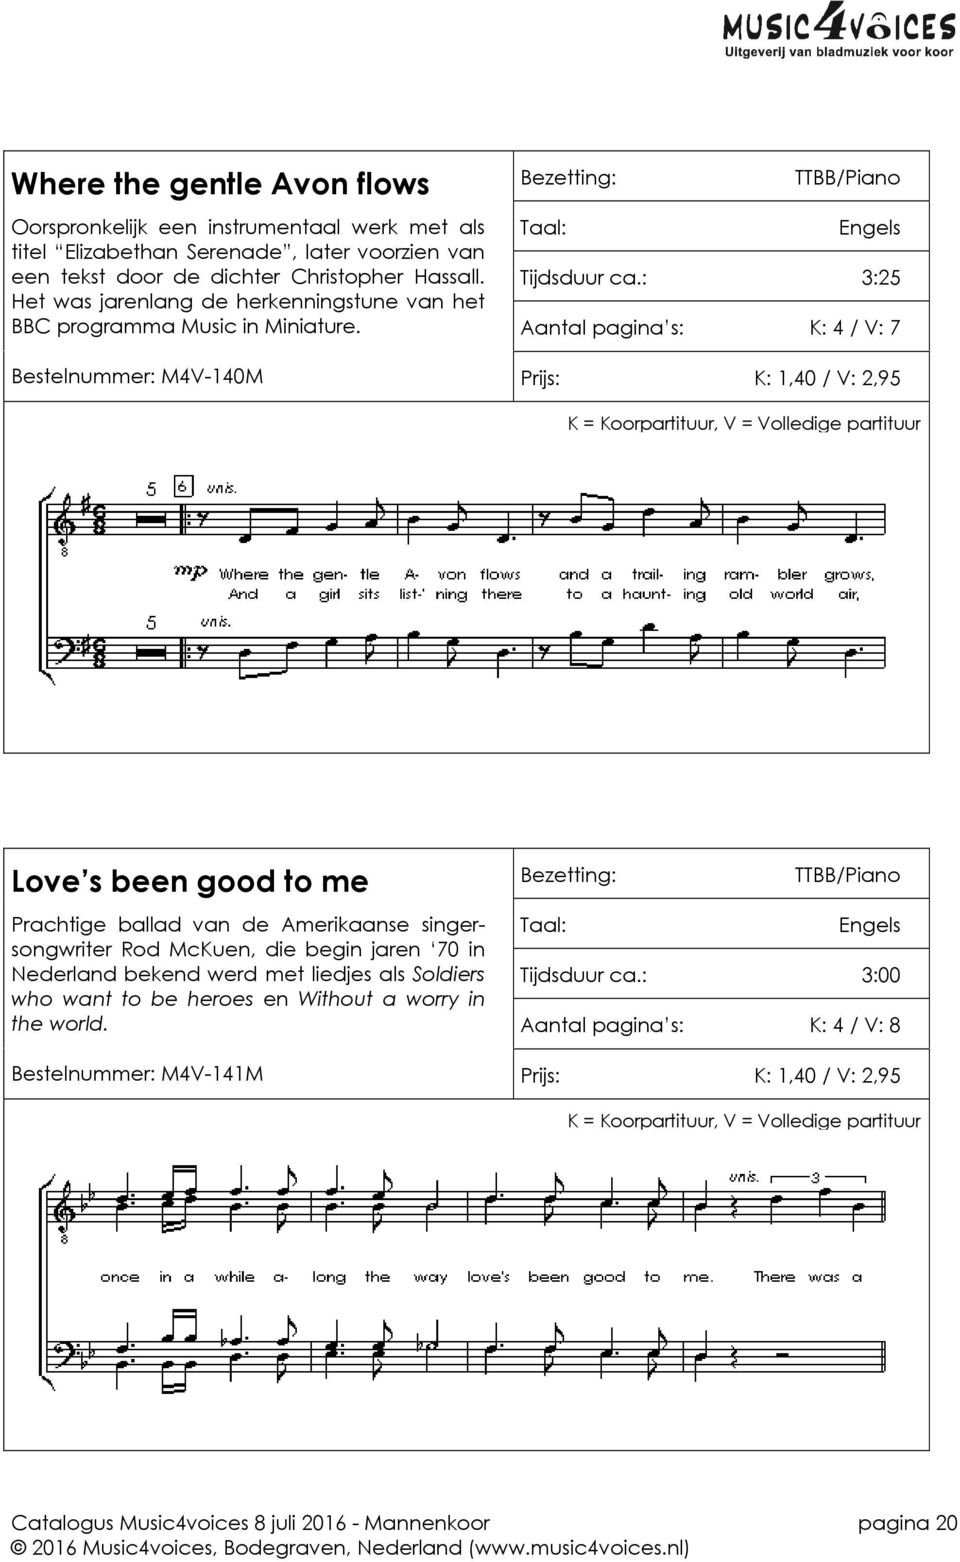 : 3:25 Aantal pagina s: K: 4 / V: 7 Bestelnummer: M4V-140M Prijs: K: 1,40 / V: 2,95 Love s been good to me Prachtige ballad van de Amerikaanse singersongwriter Rod McKuen, die